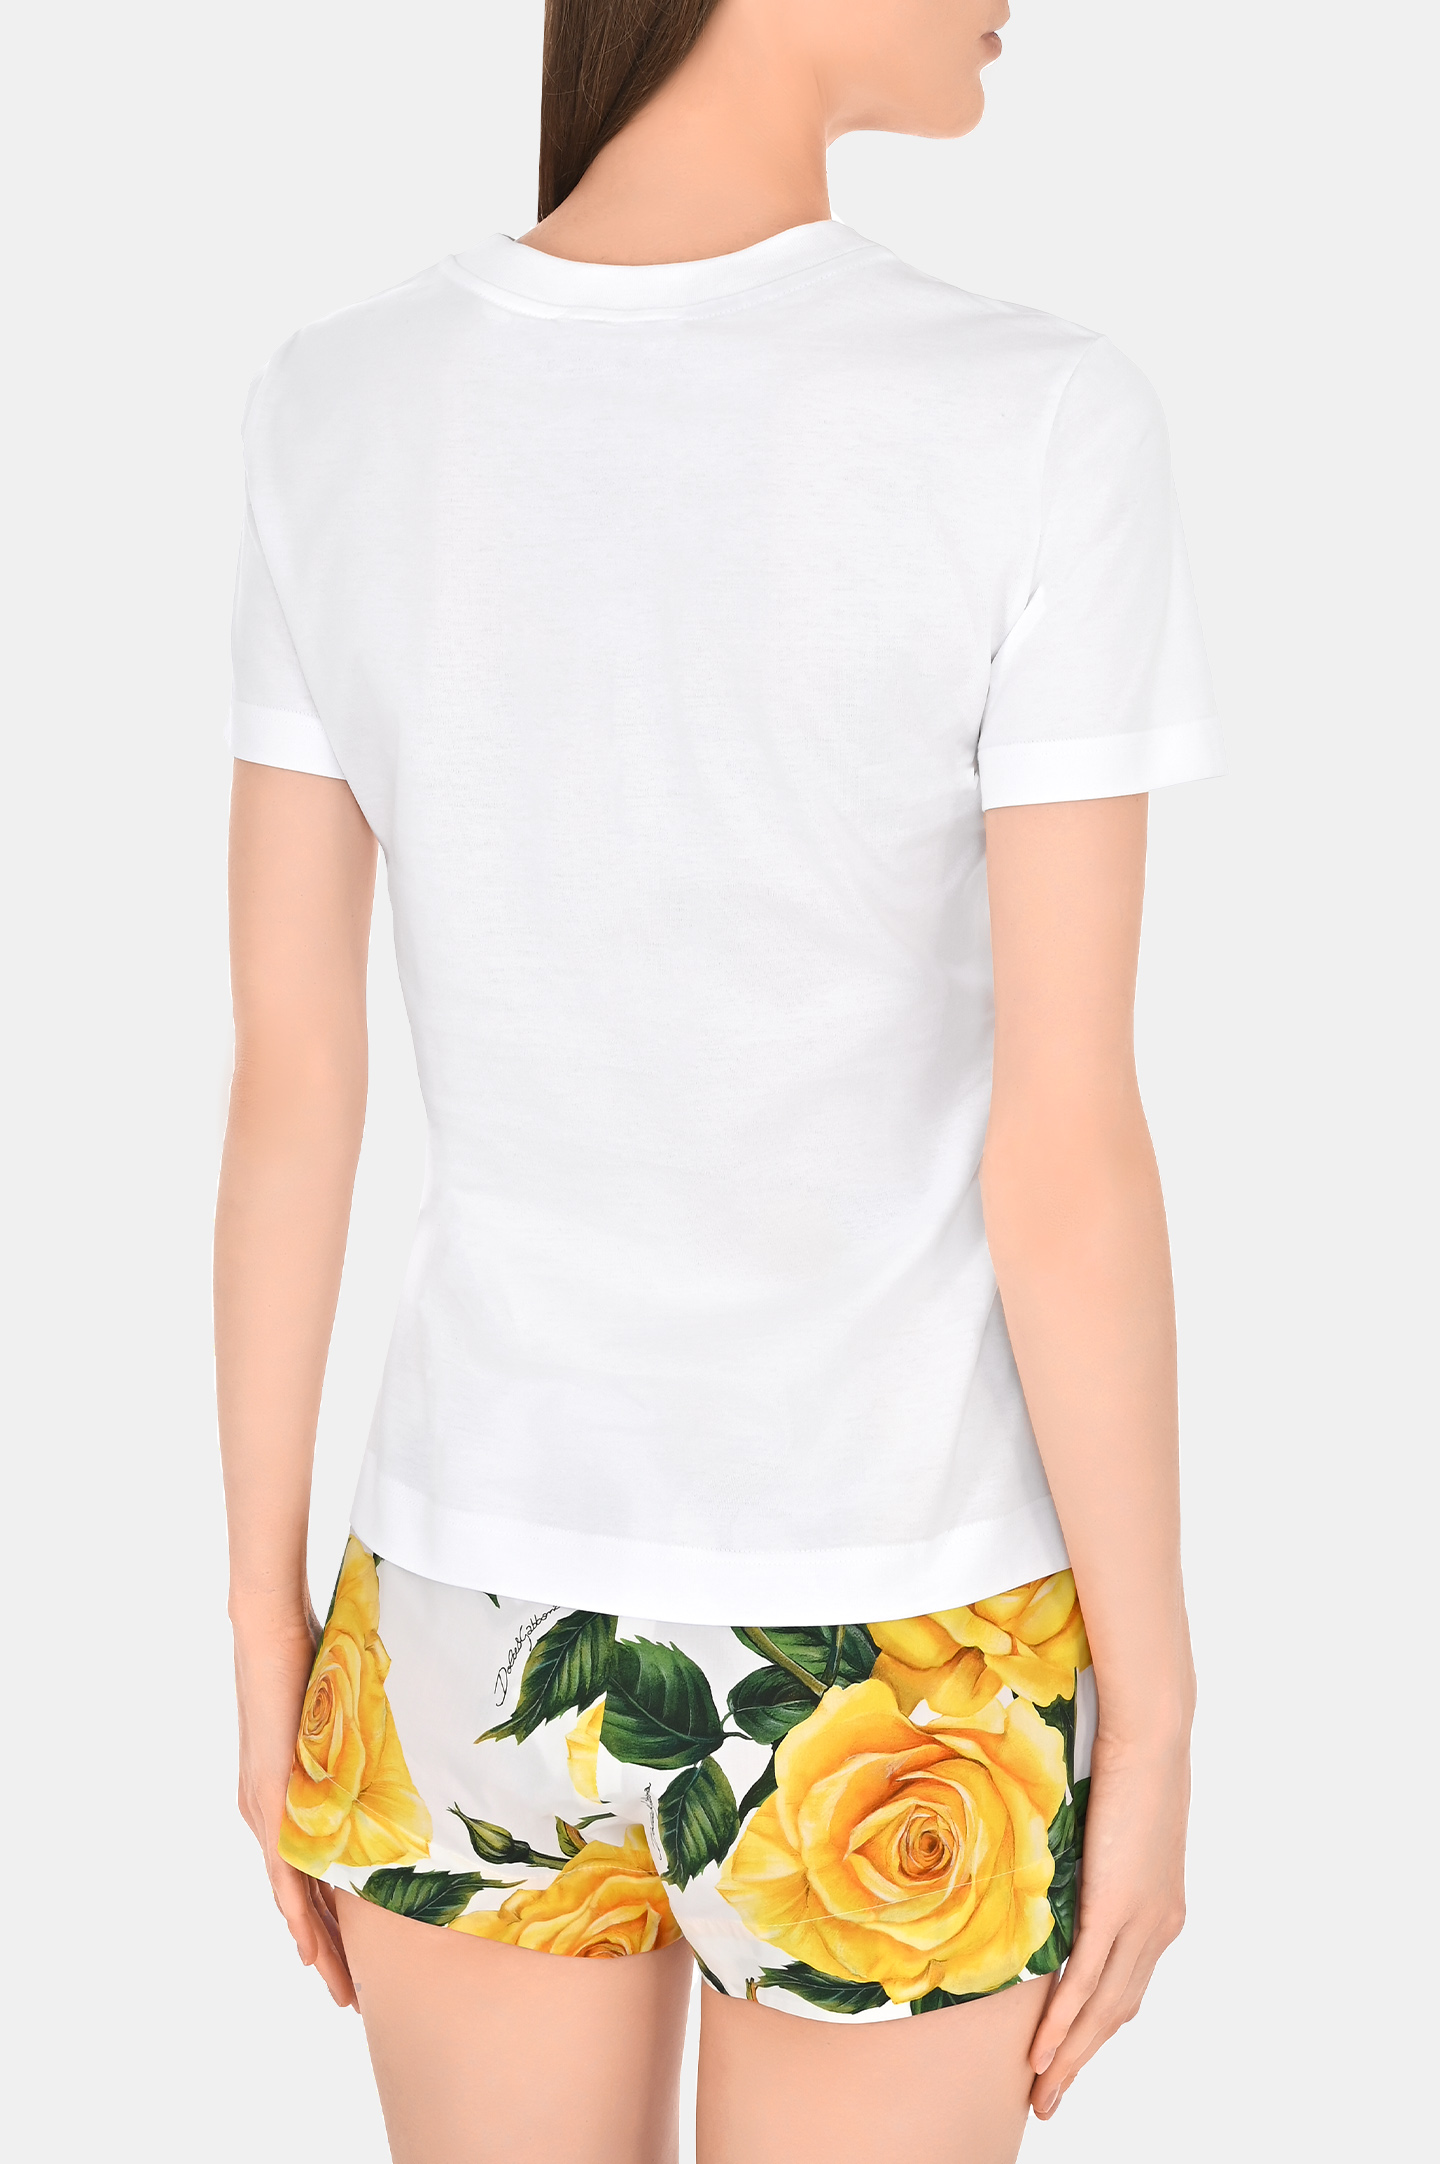 Хлопковая футболка с рисунком DOLCE & GABBANA F8T00Z GDCBT, цвет: Белый, Женский